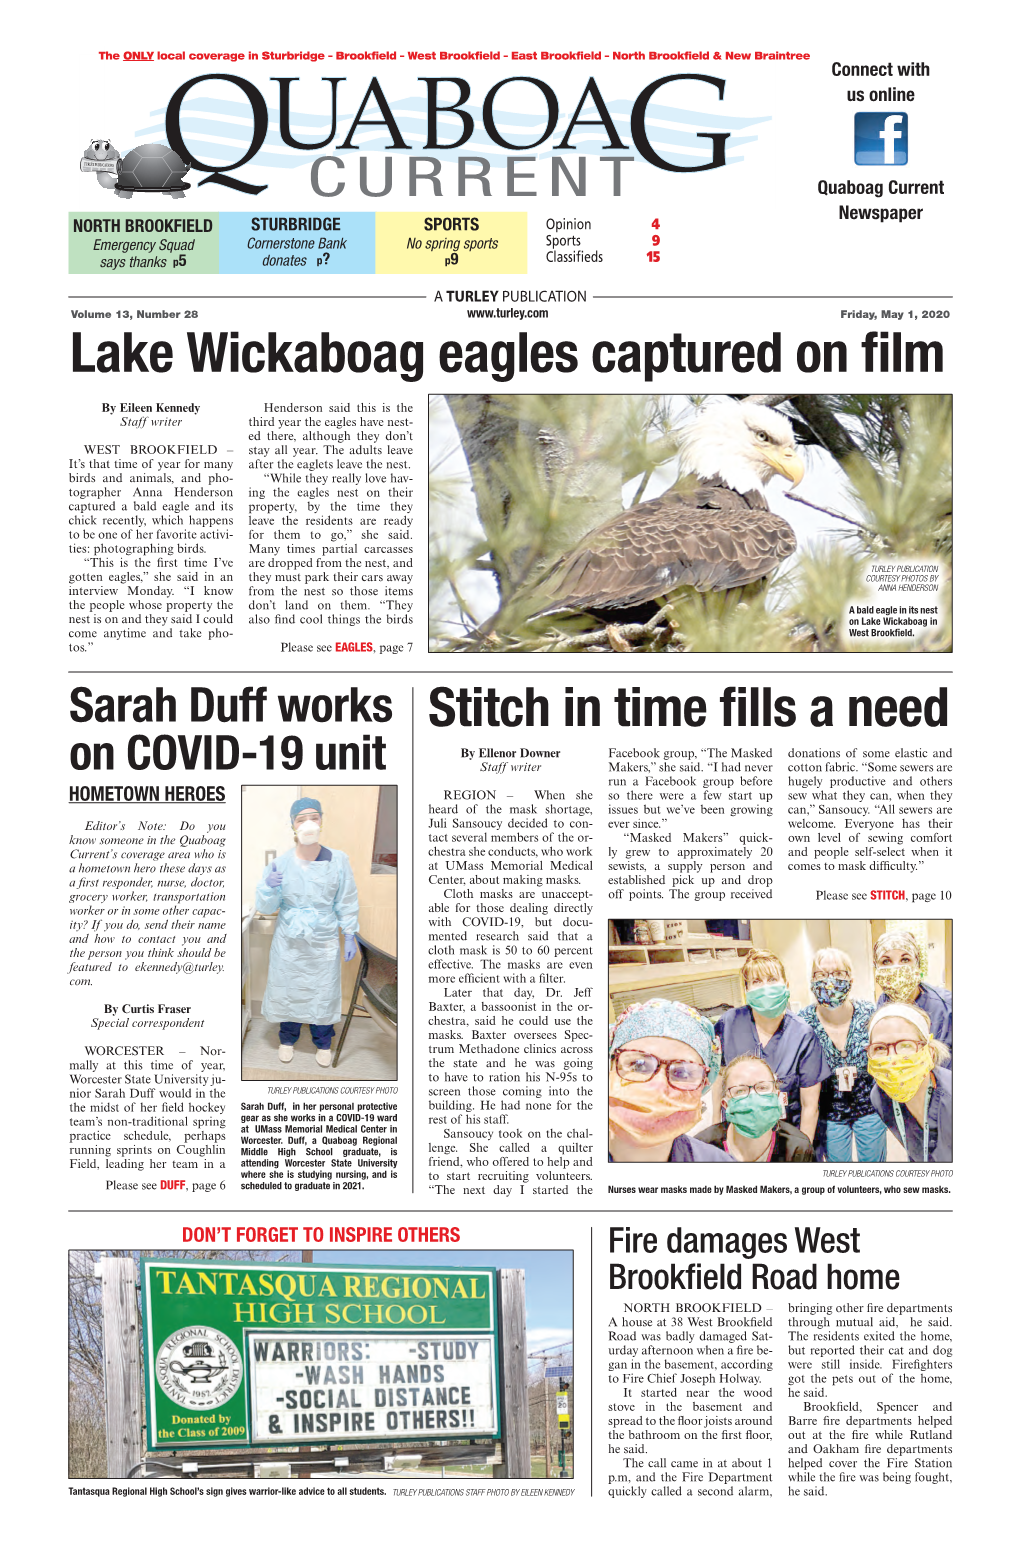 Lake Wickaboag Eagles Captured on Film